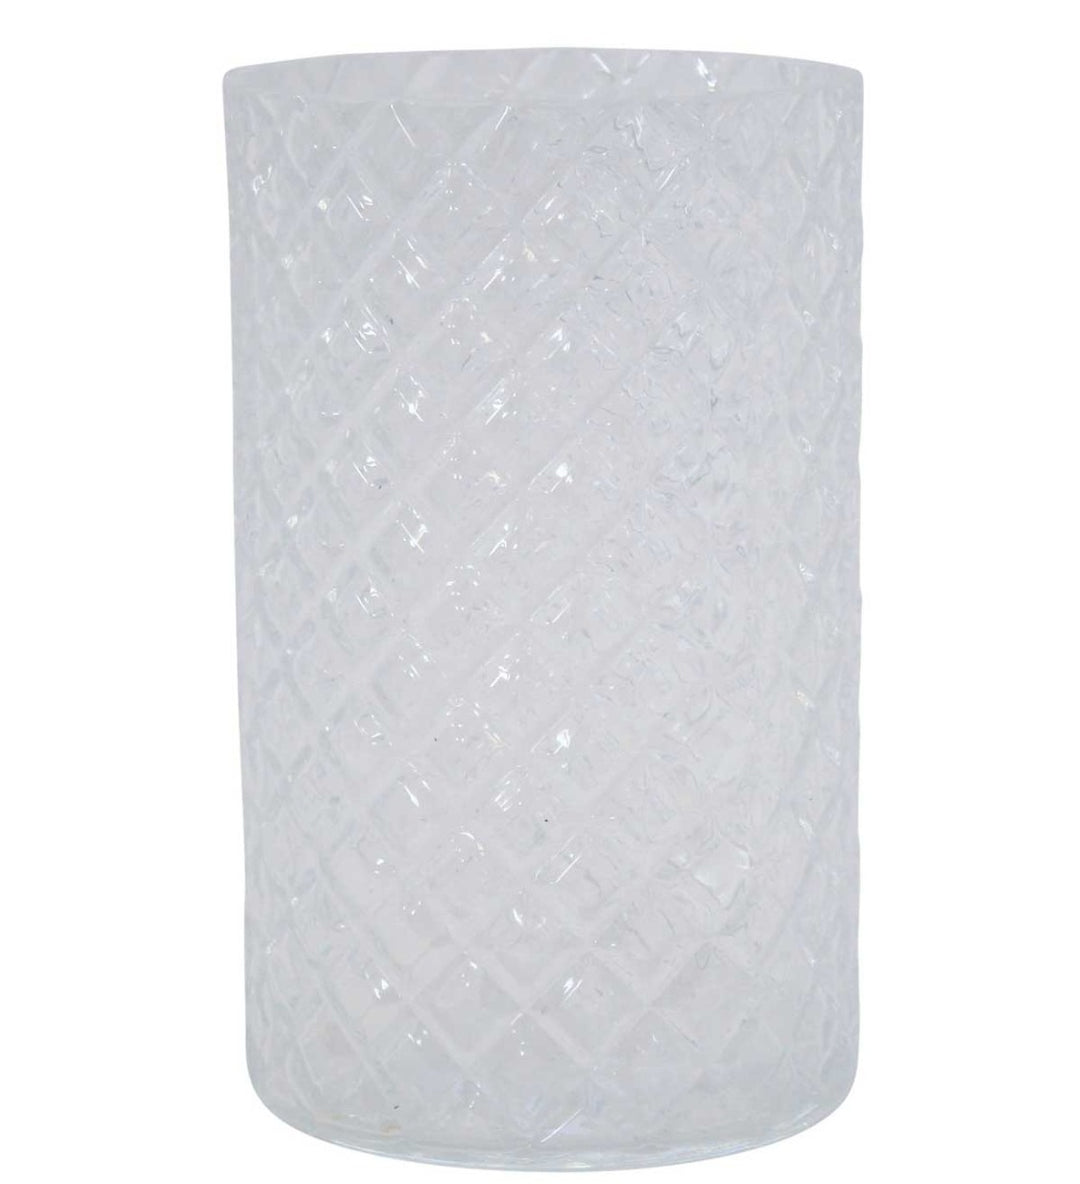 Durchscheinende Krasilnikoff - Windlicht Glas Karo große Vase.